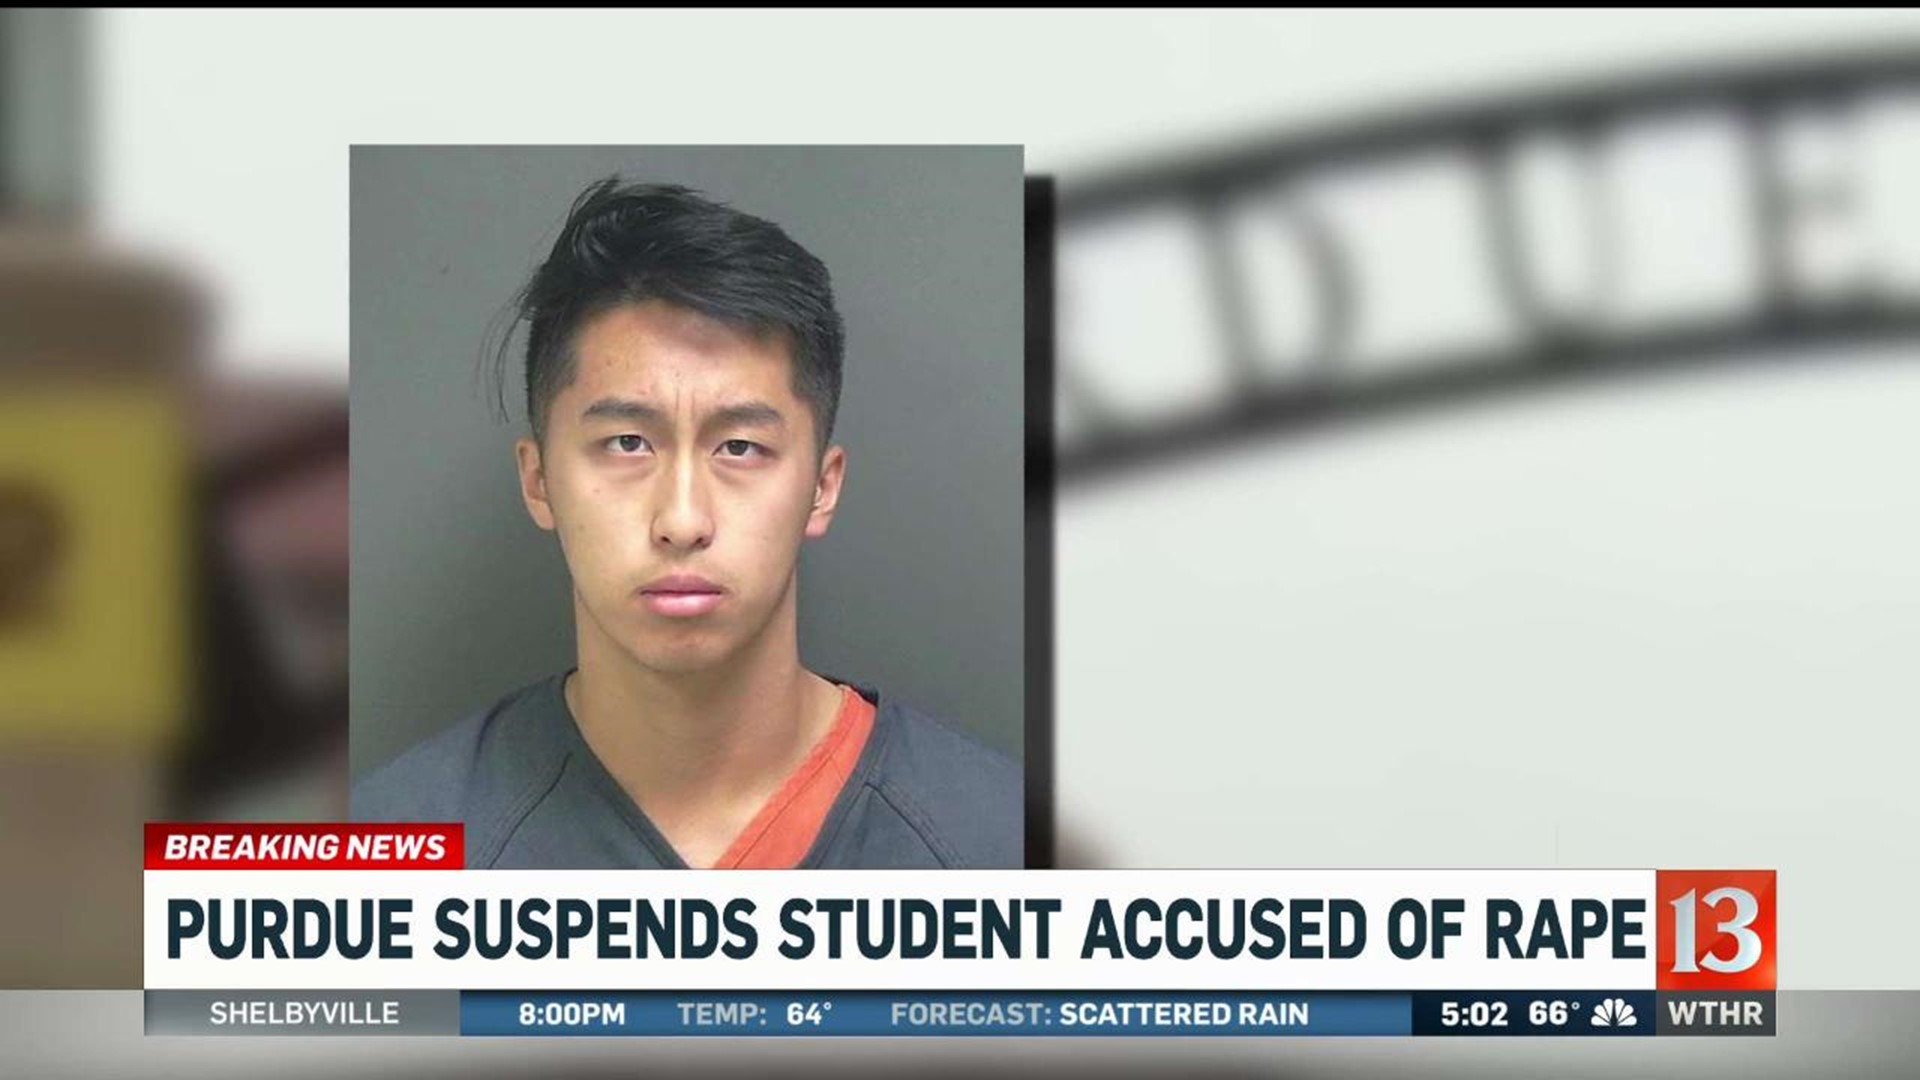 Purdue suspends student accused of rape